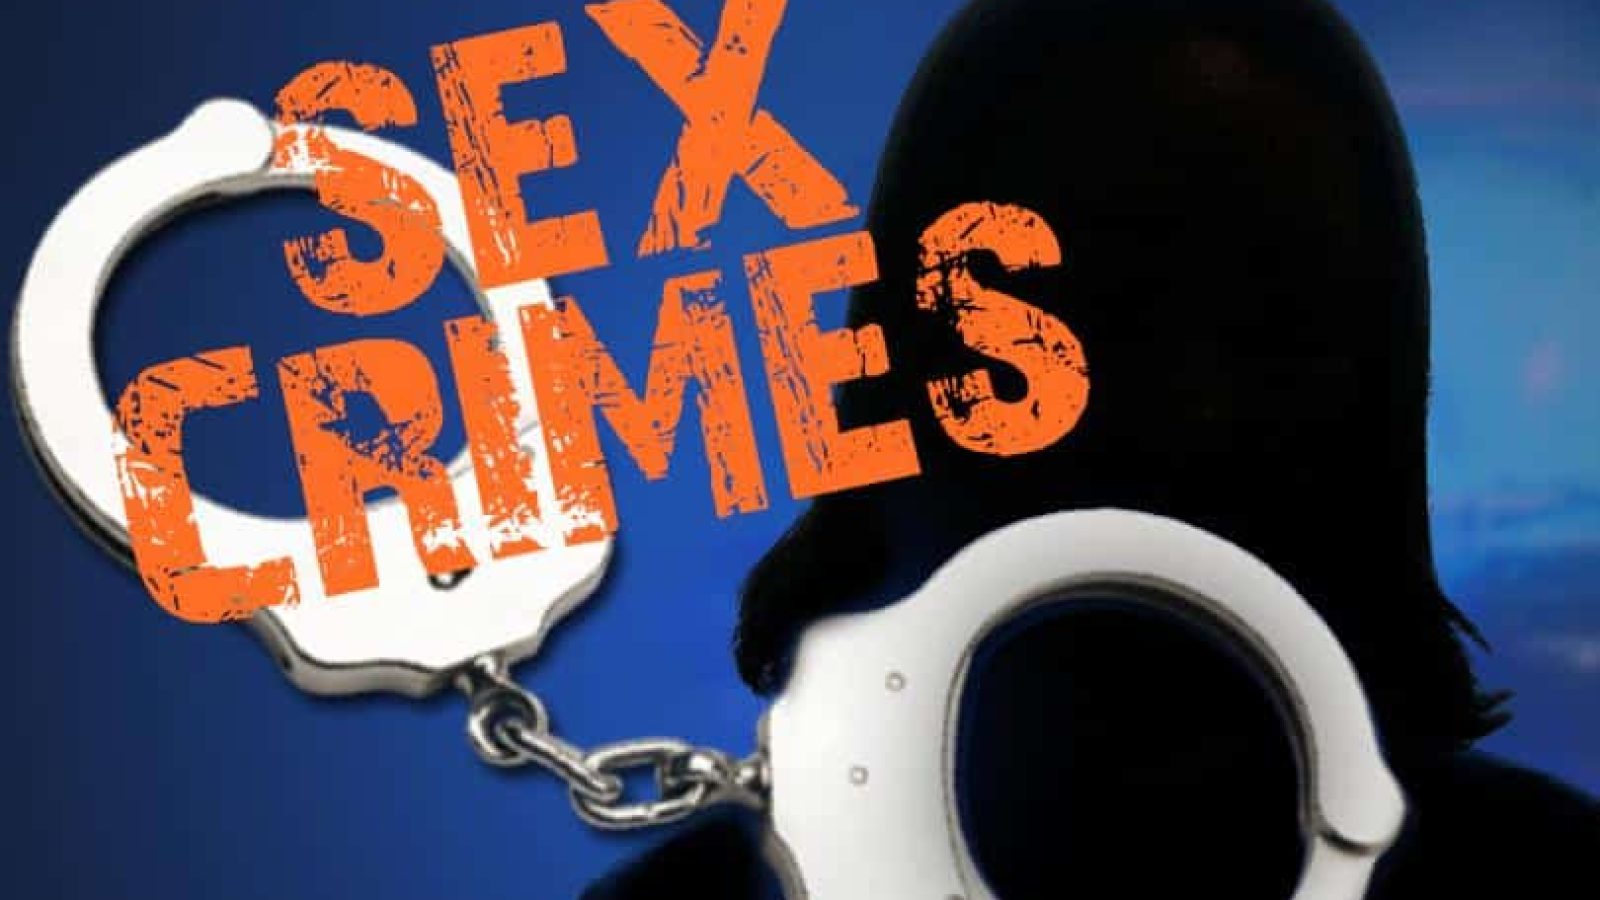 Sex crimes handcuffs